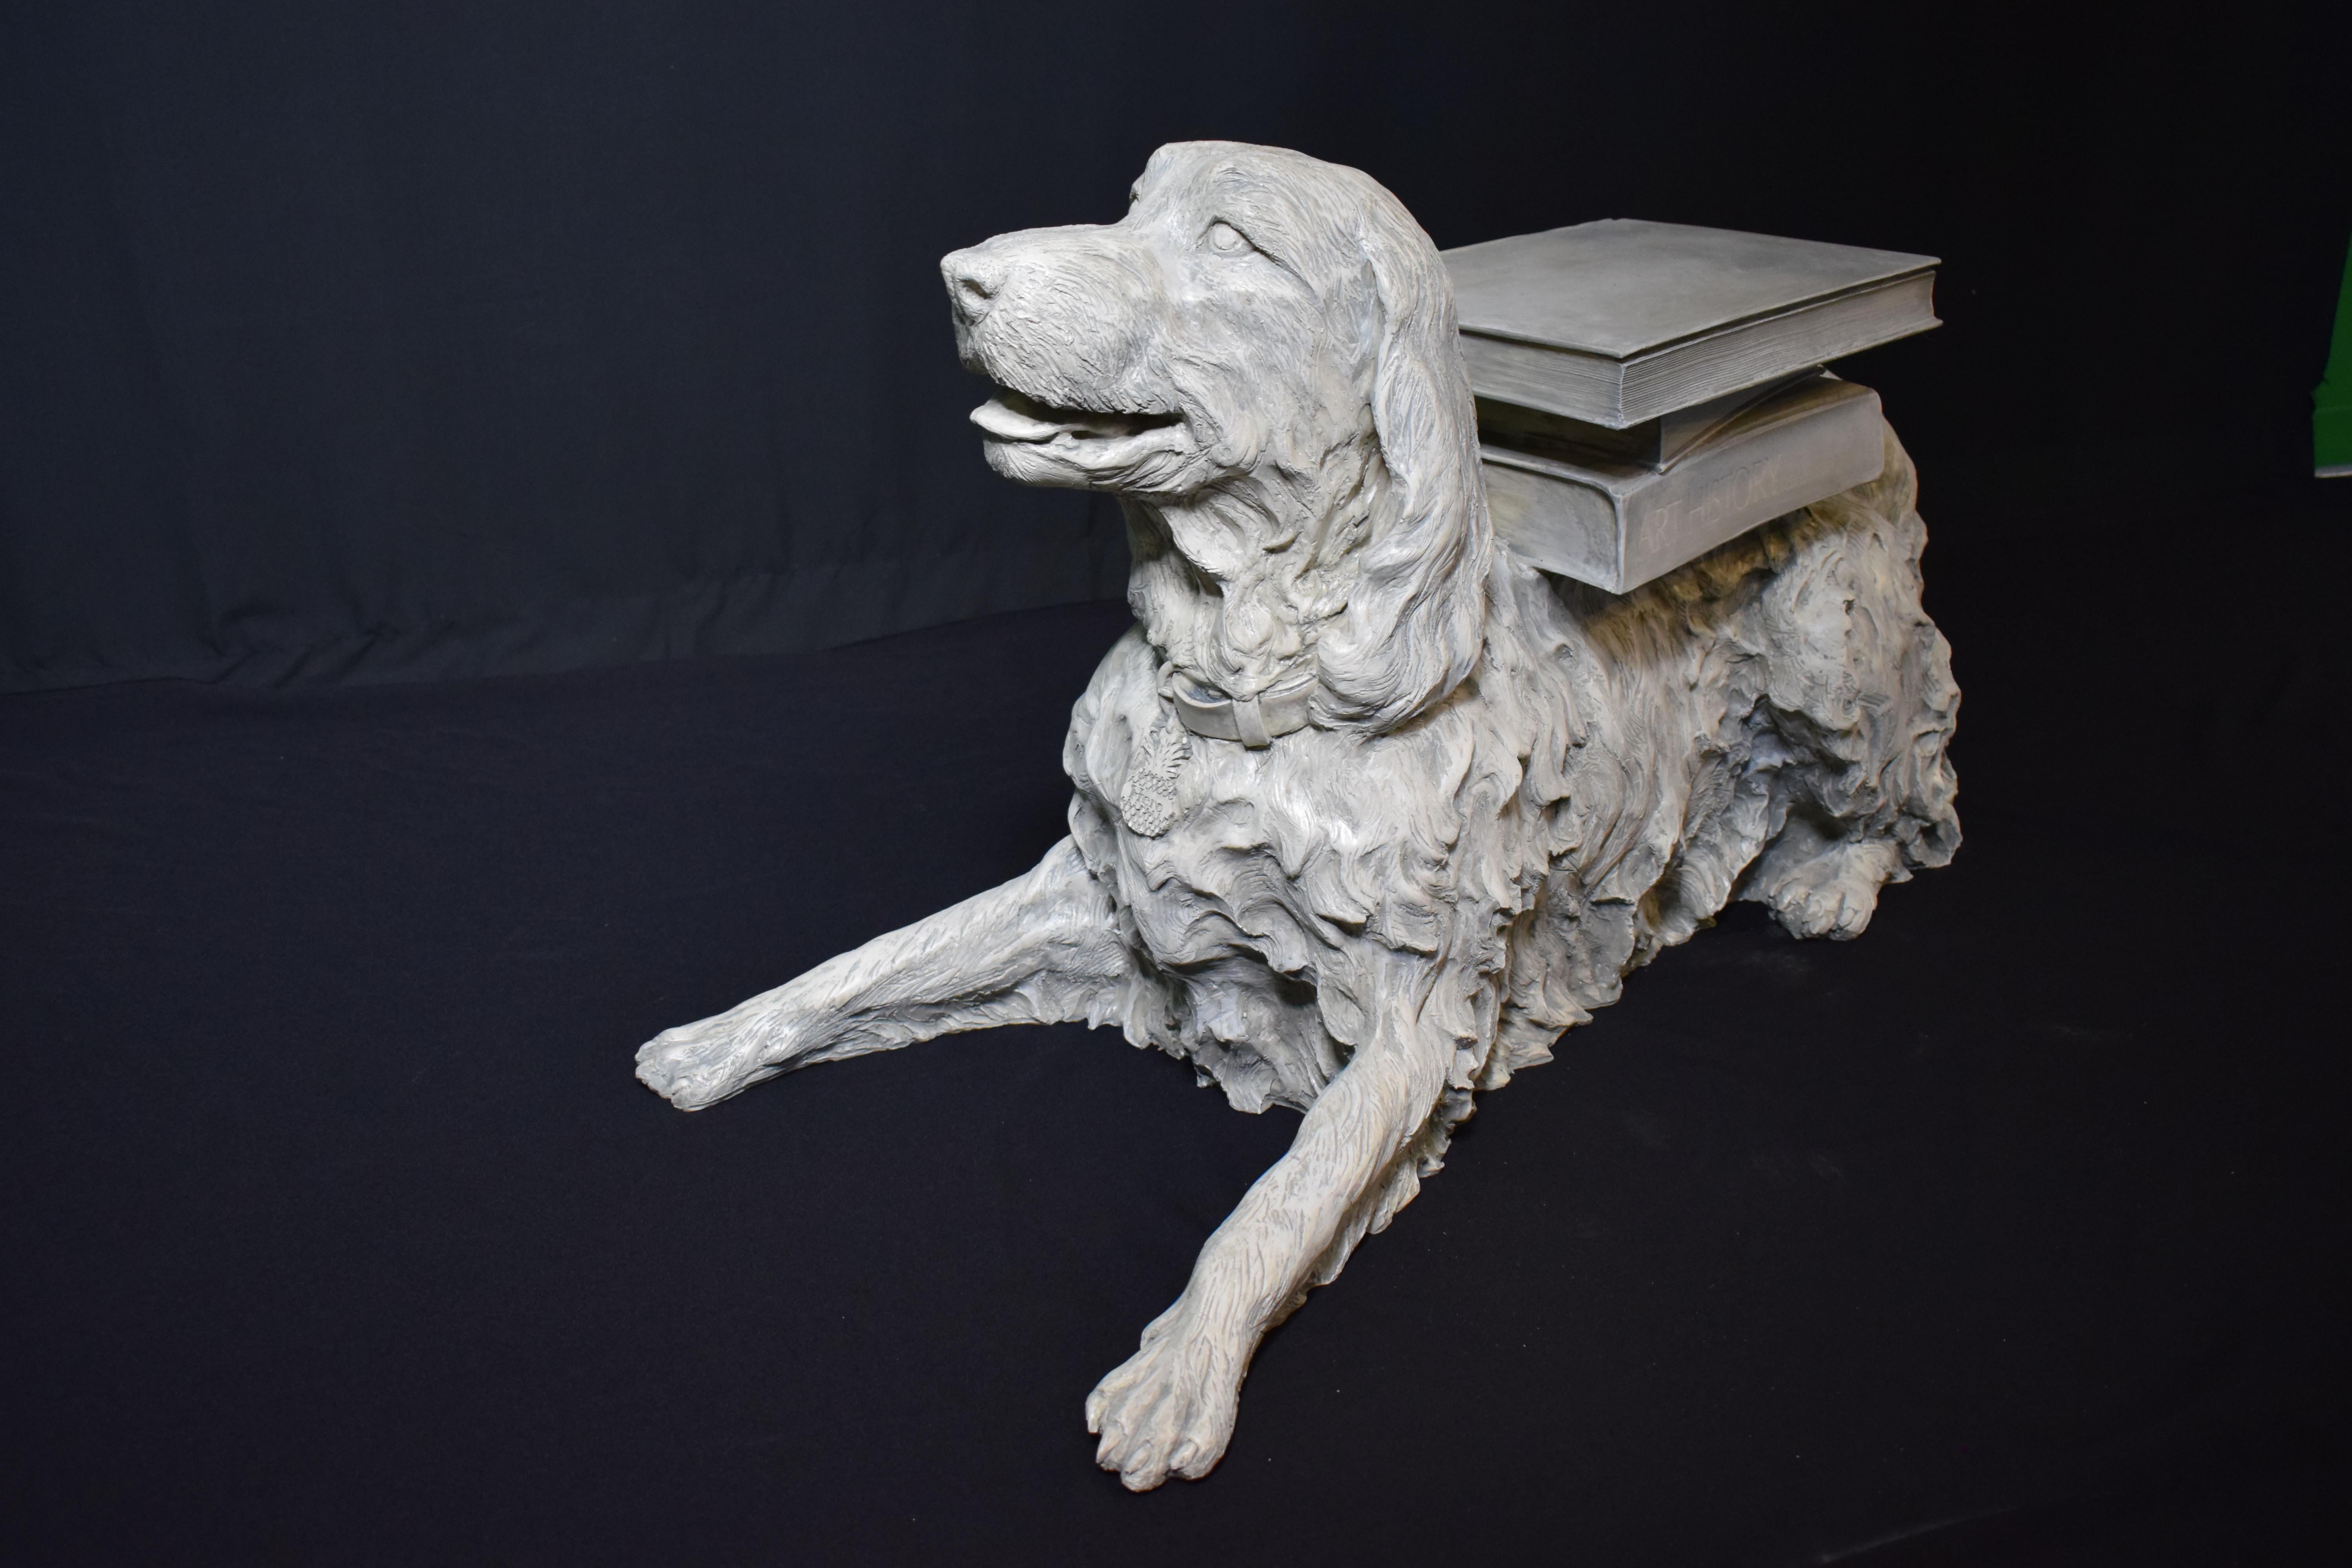 Eine sehr dekorative Skulptur in voller Größe eines Hundes, der sich mit einigen Büchern auf den Rücken legt. Großes Detail.
Abmessungen: Höhe 22 1/2